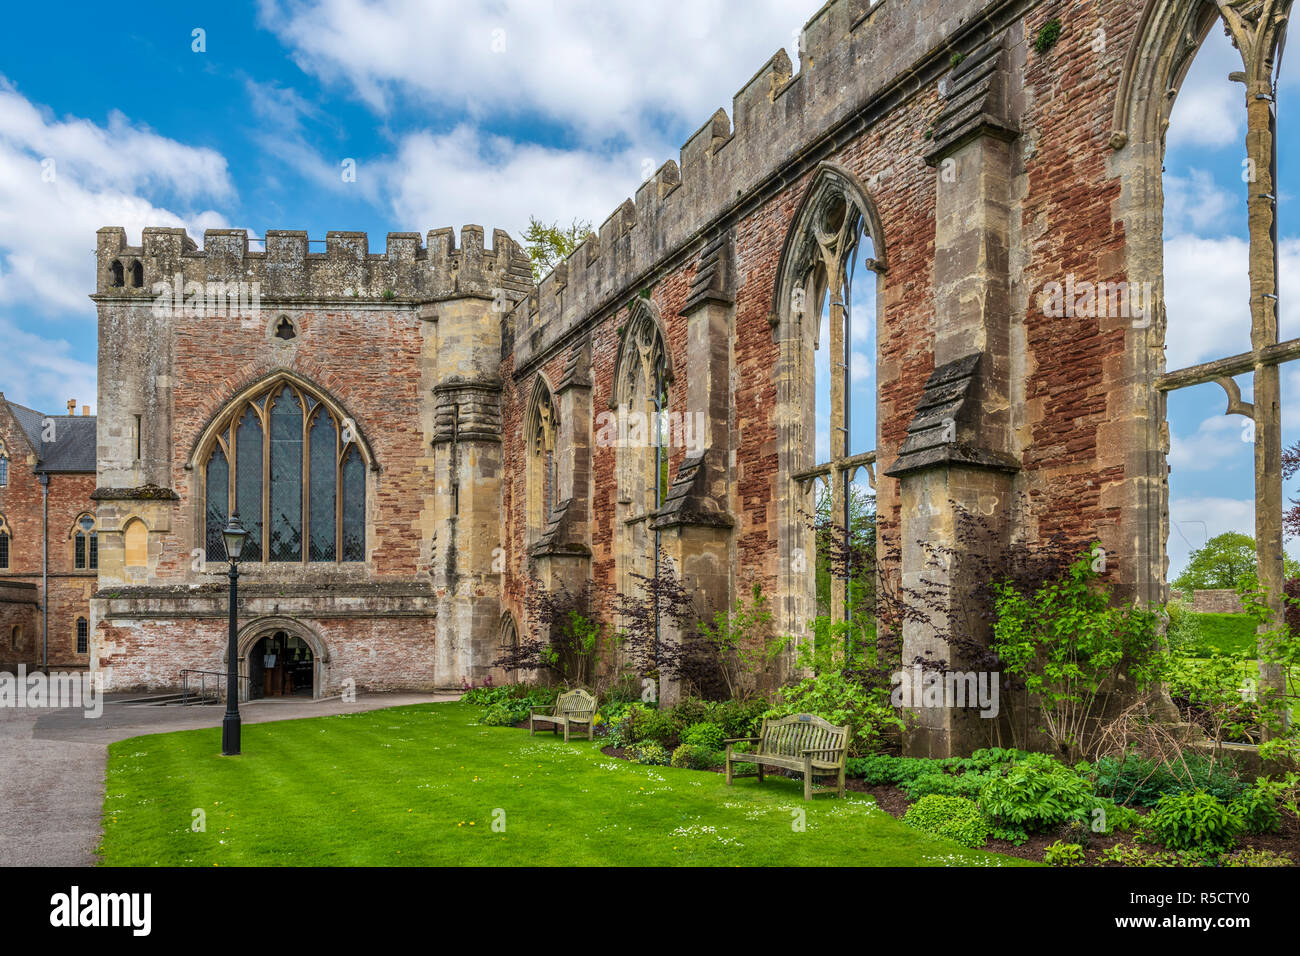 L'évêché de Wells, Somerset, avec sa pelouse et jardins est une destination touristique populaire. Banque D'Images